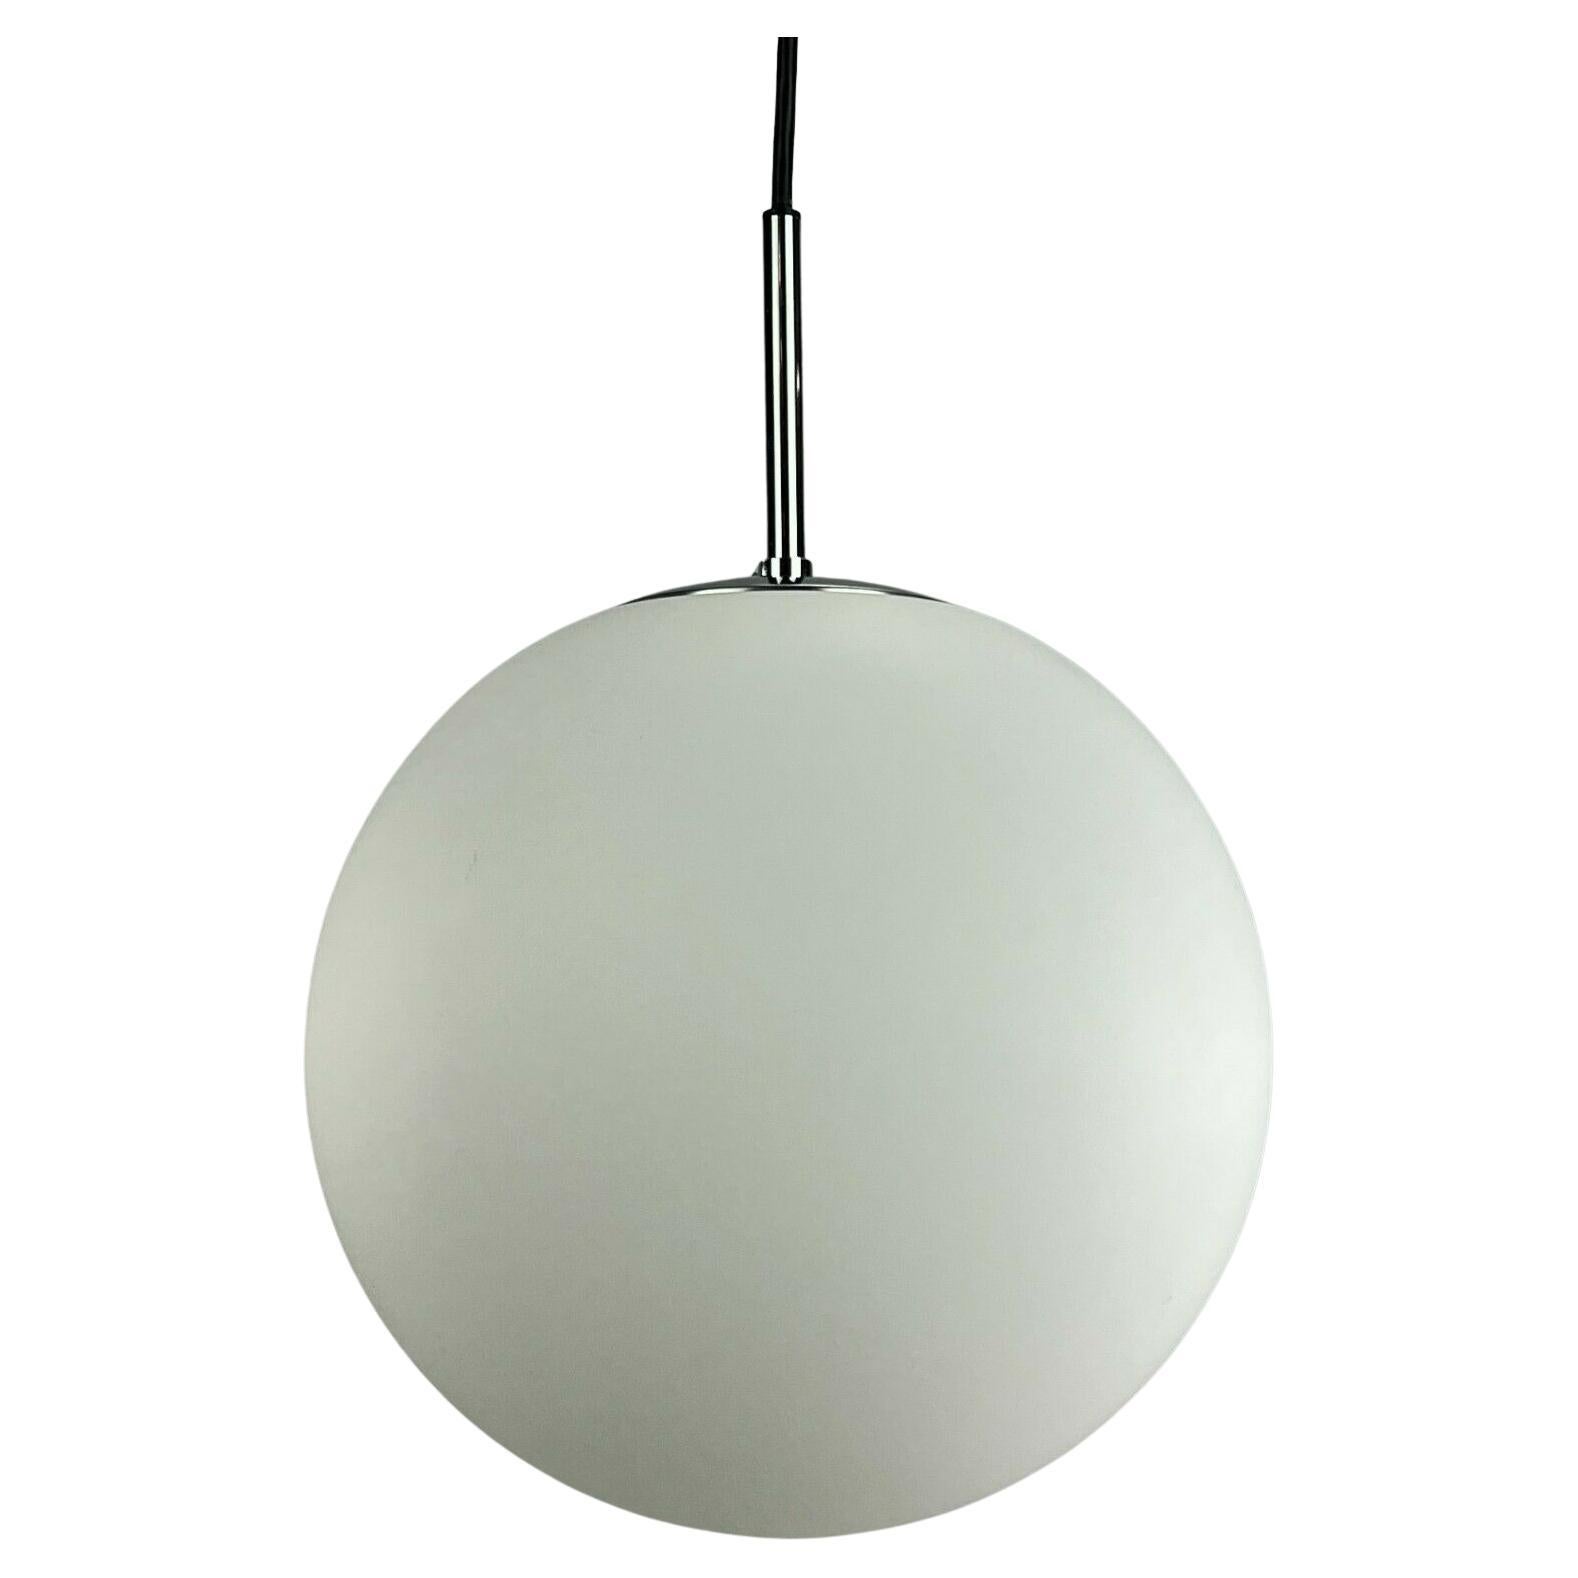 60s 70s Lamp Light Ceiling Light Limburg Spherical Lamp Ball Design 60s